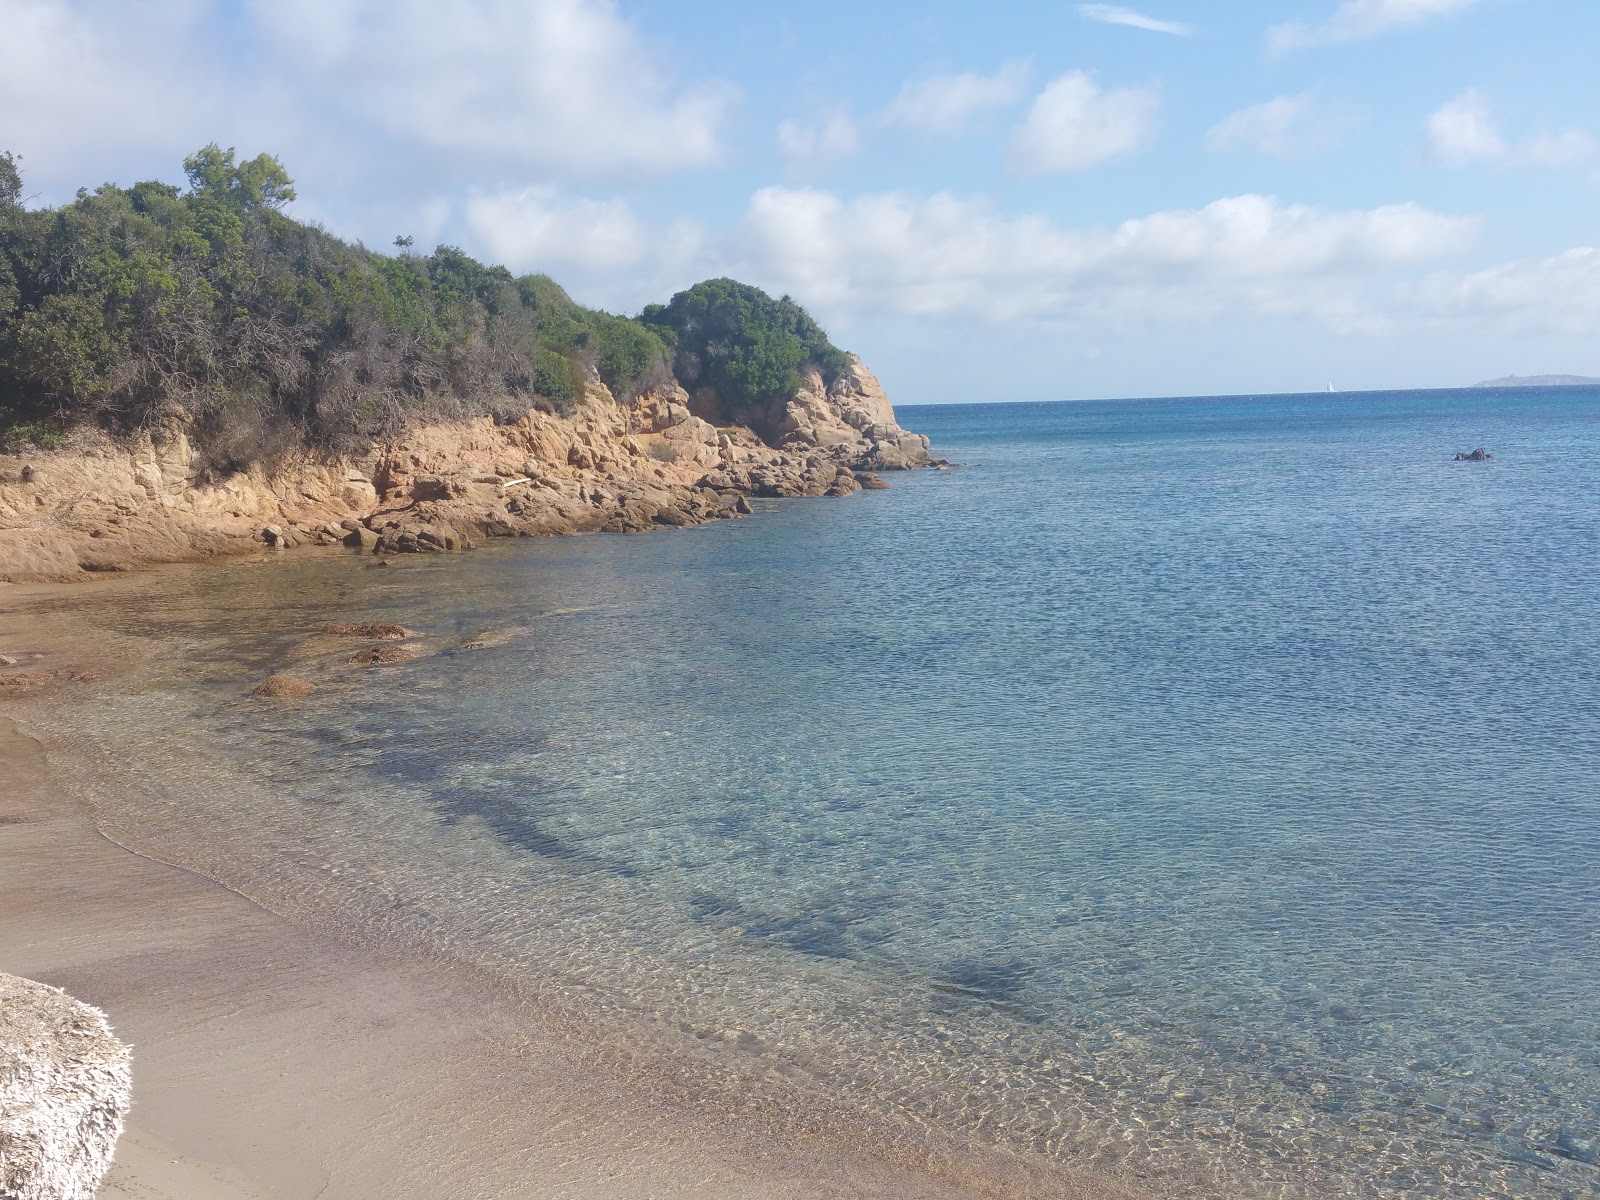 Photo of Spiaggia Cala Sambuco located in natural area